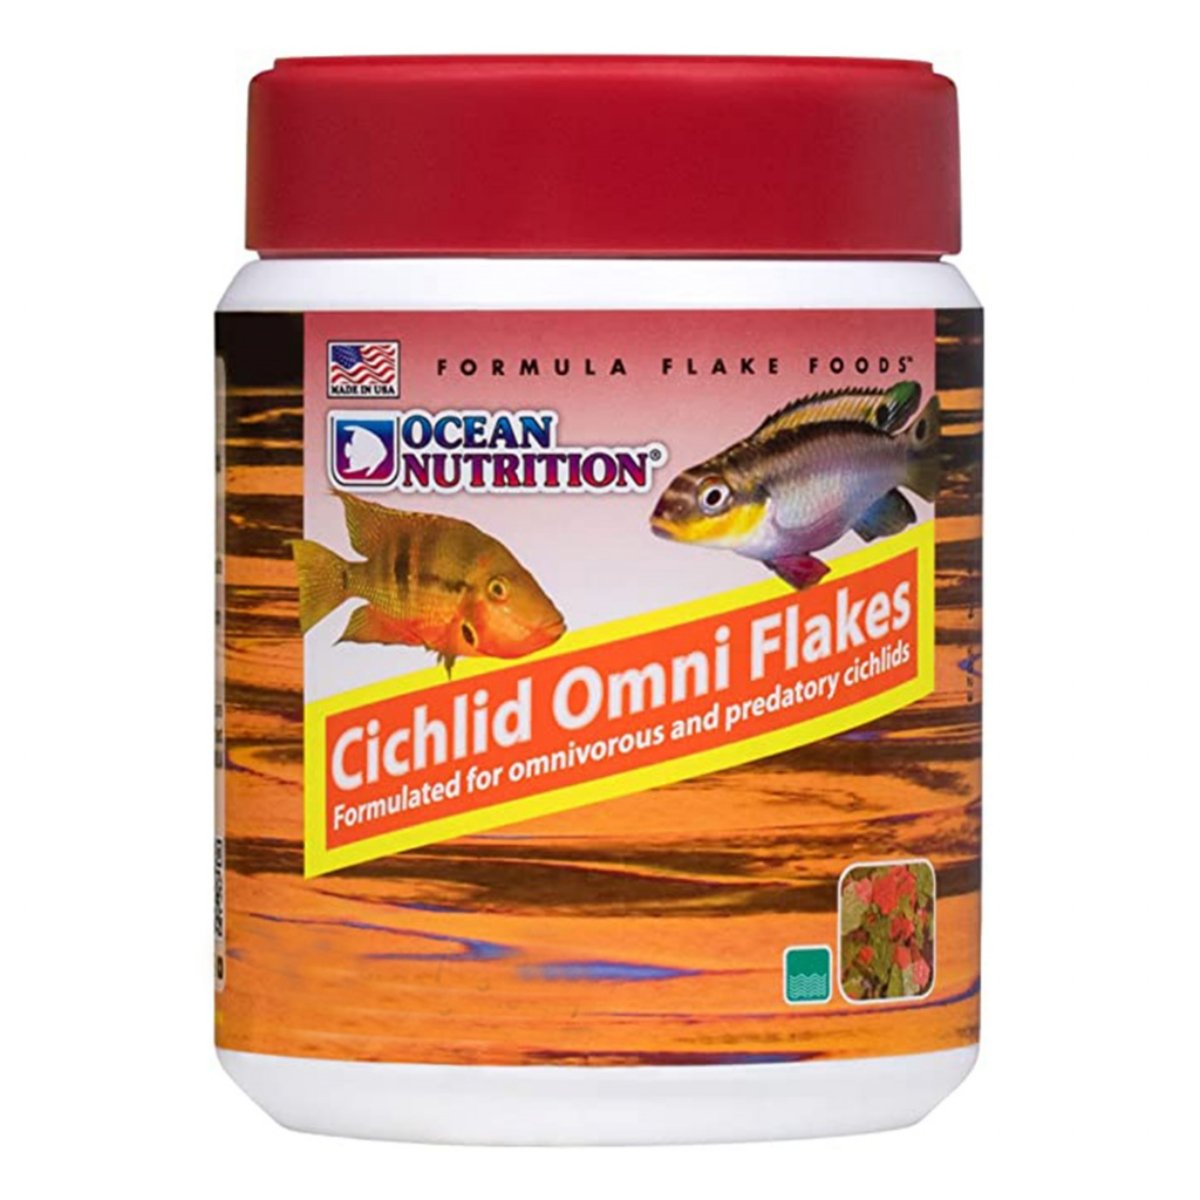 OCEAN NUTRITION Cichlid Omni Flakes, 71g 71g